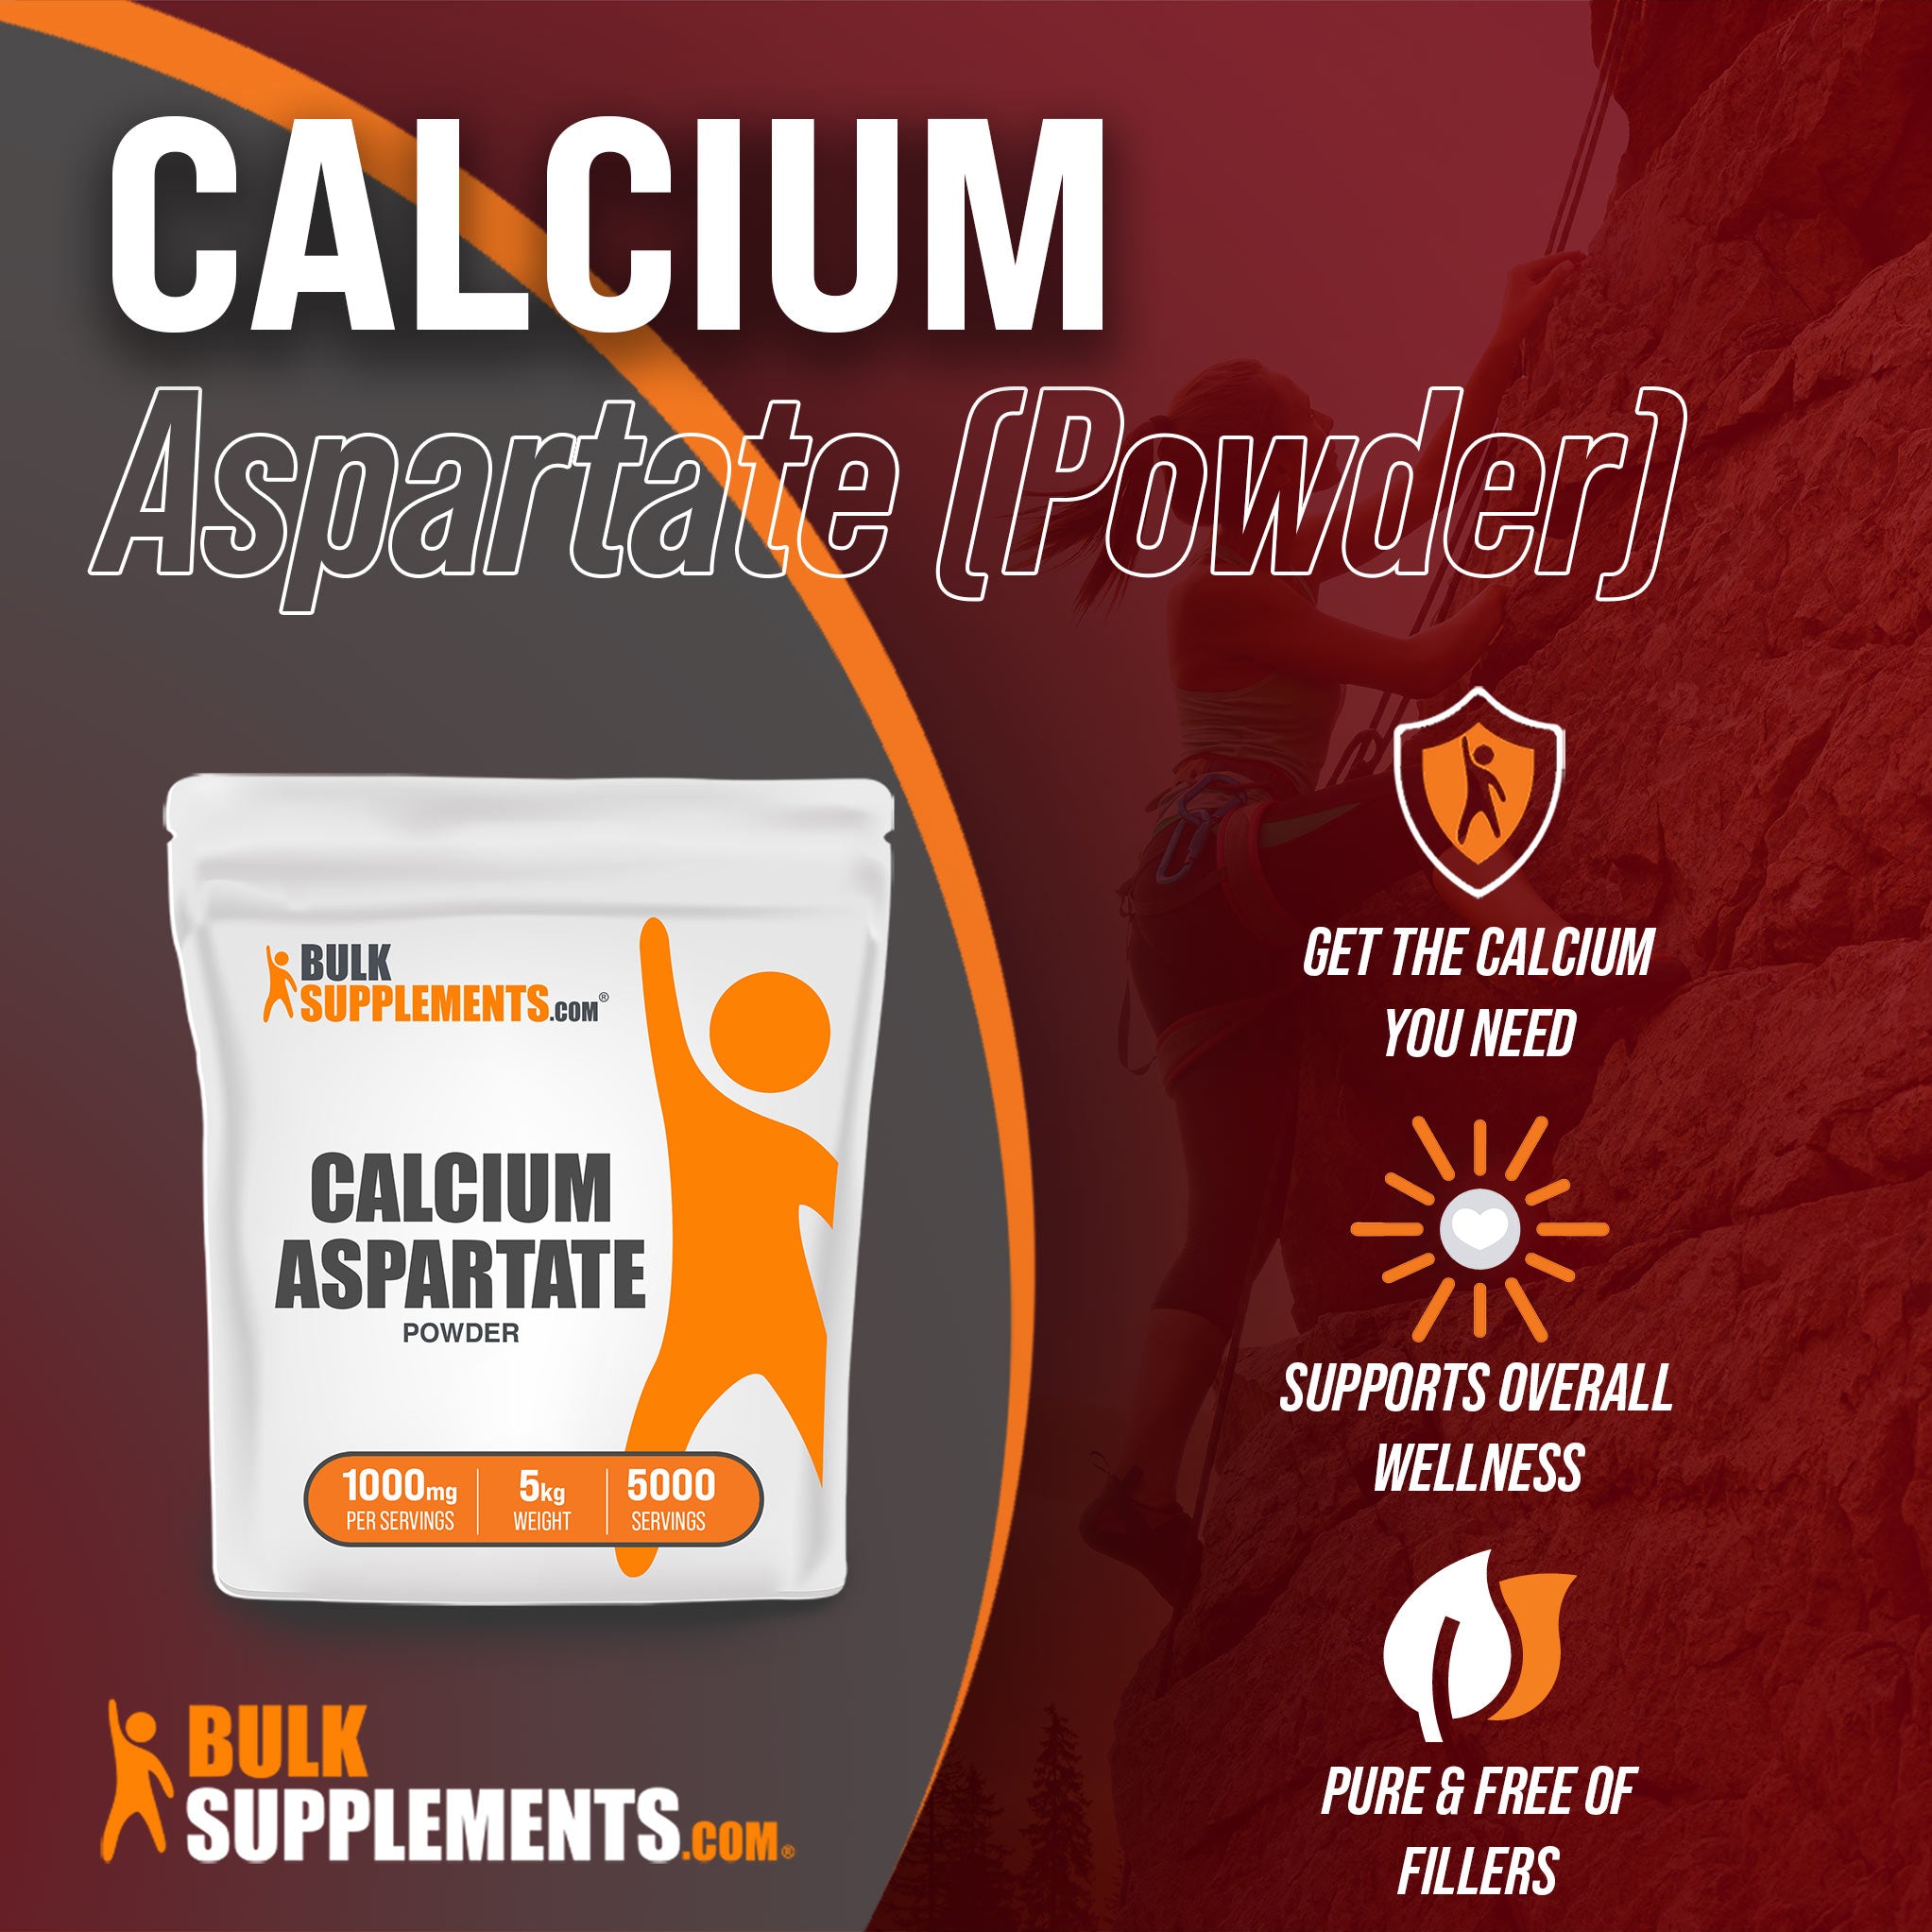 5kg calcium supplement - calcium aspartate - pure and filler free